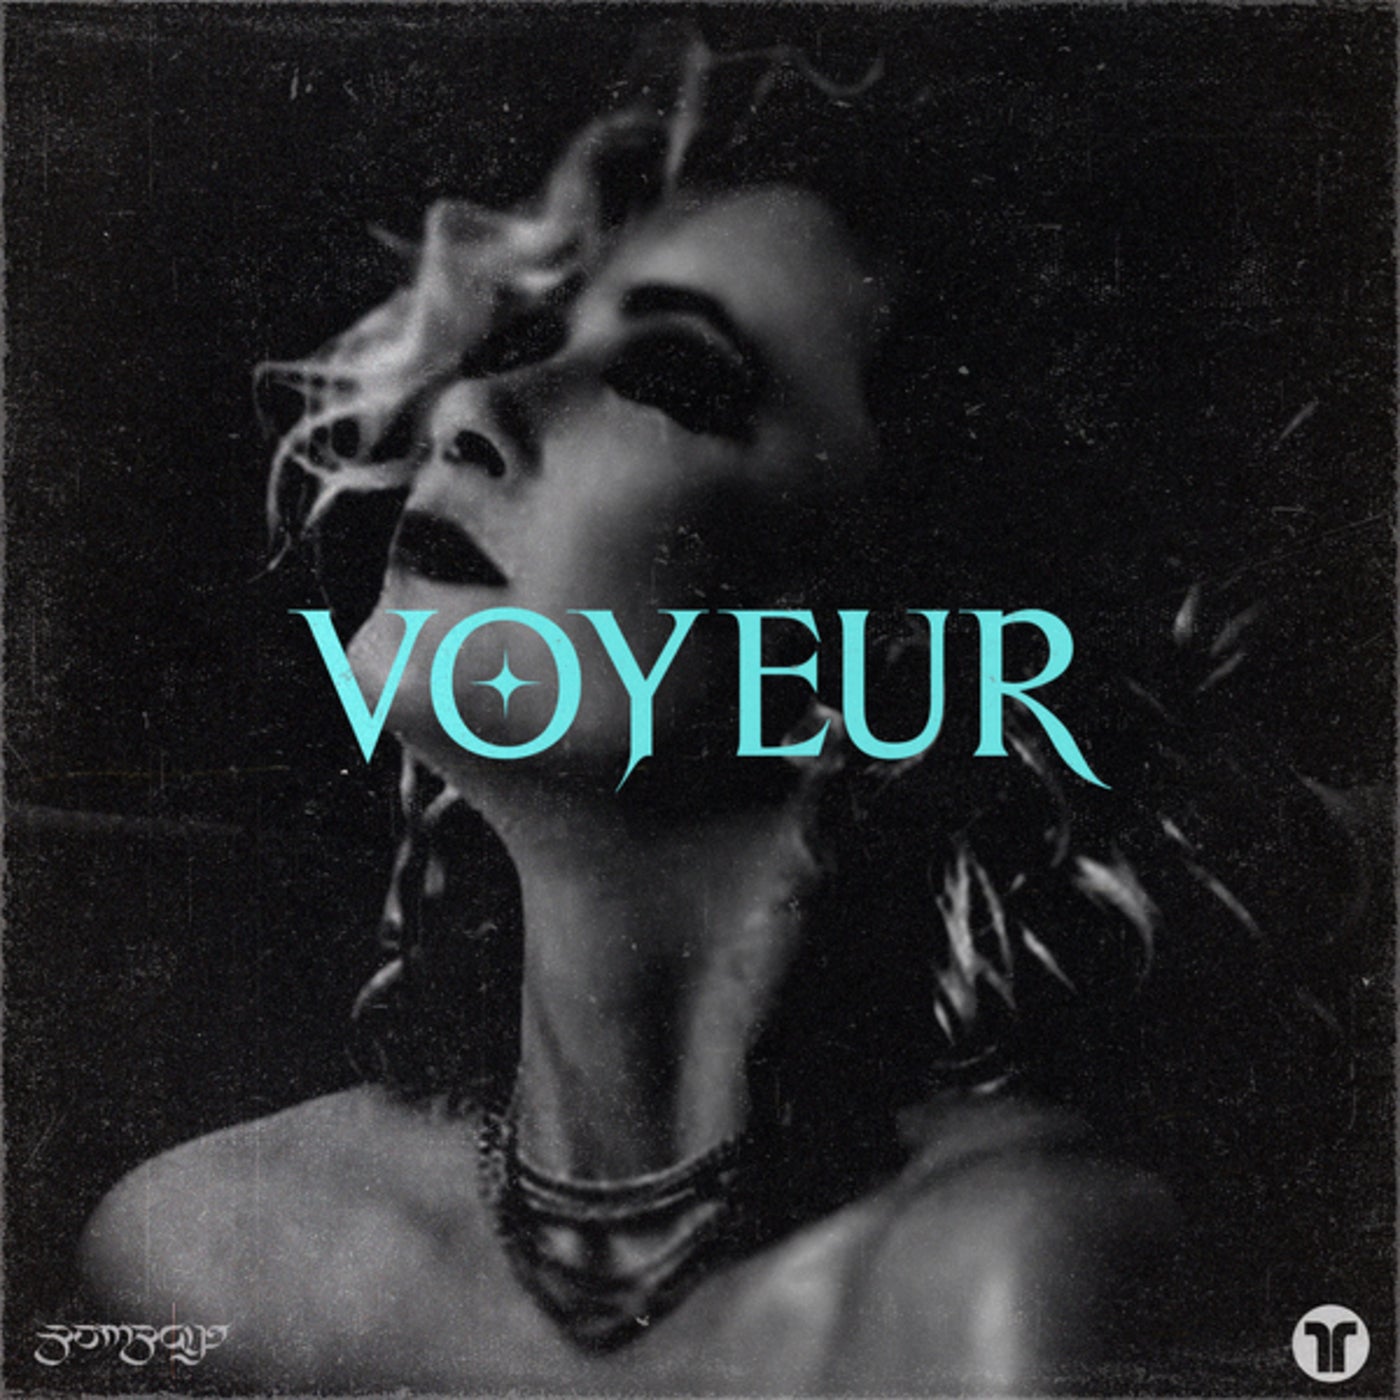 Bombays - Voyeur (Extended Mix)